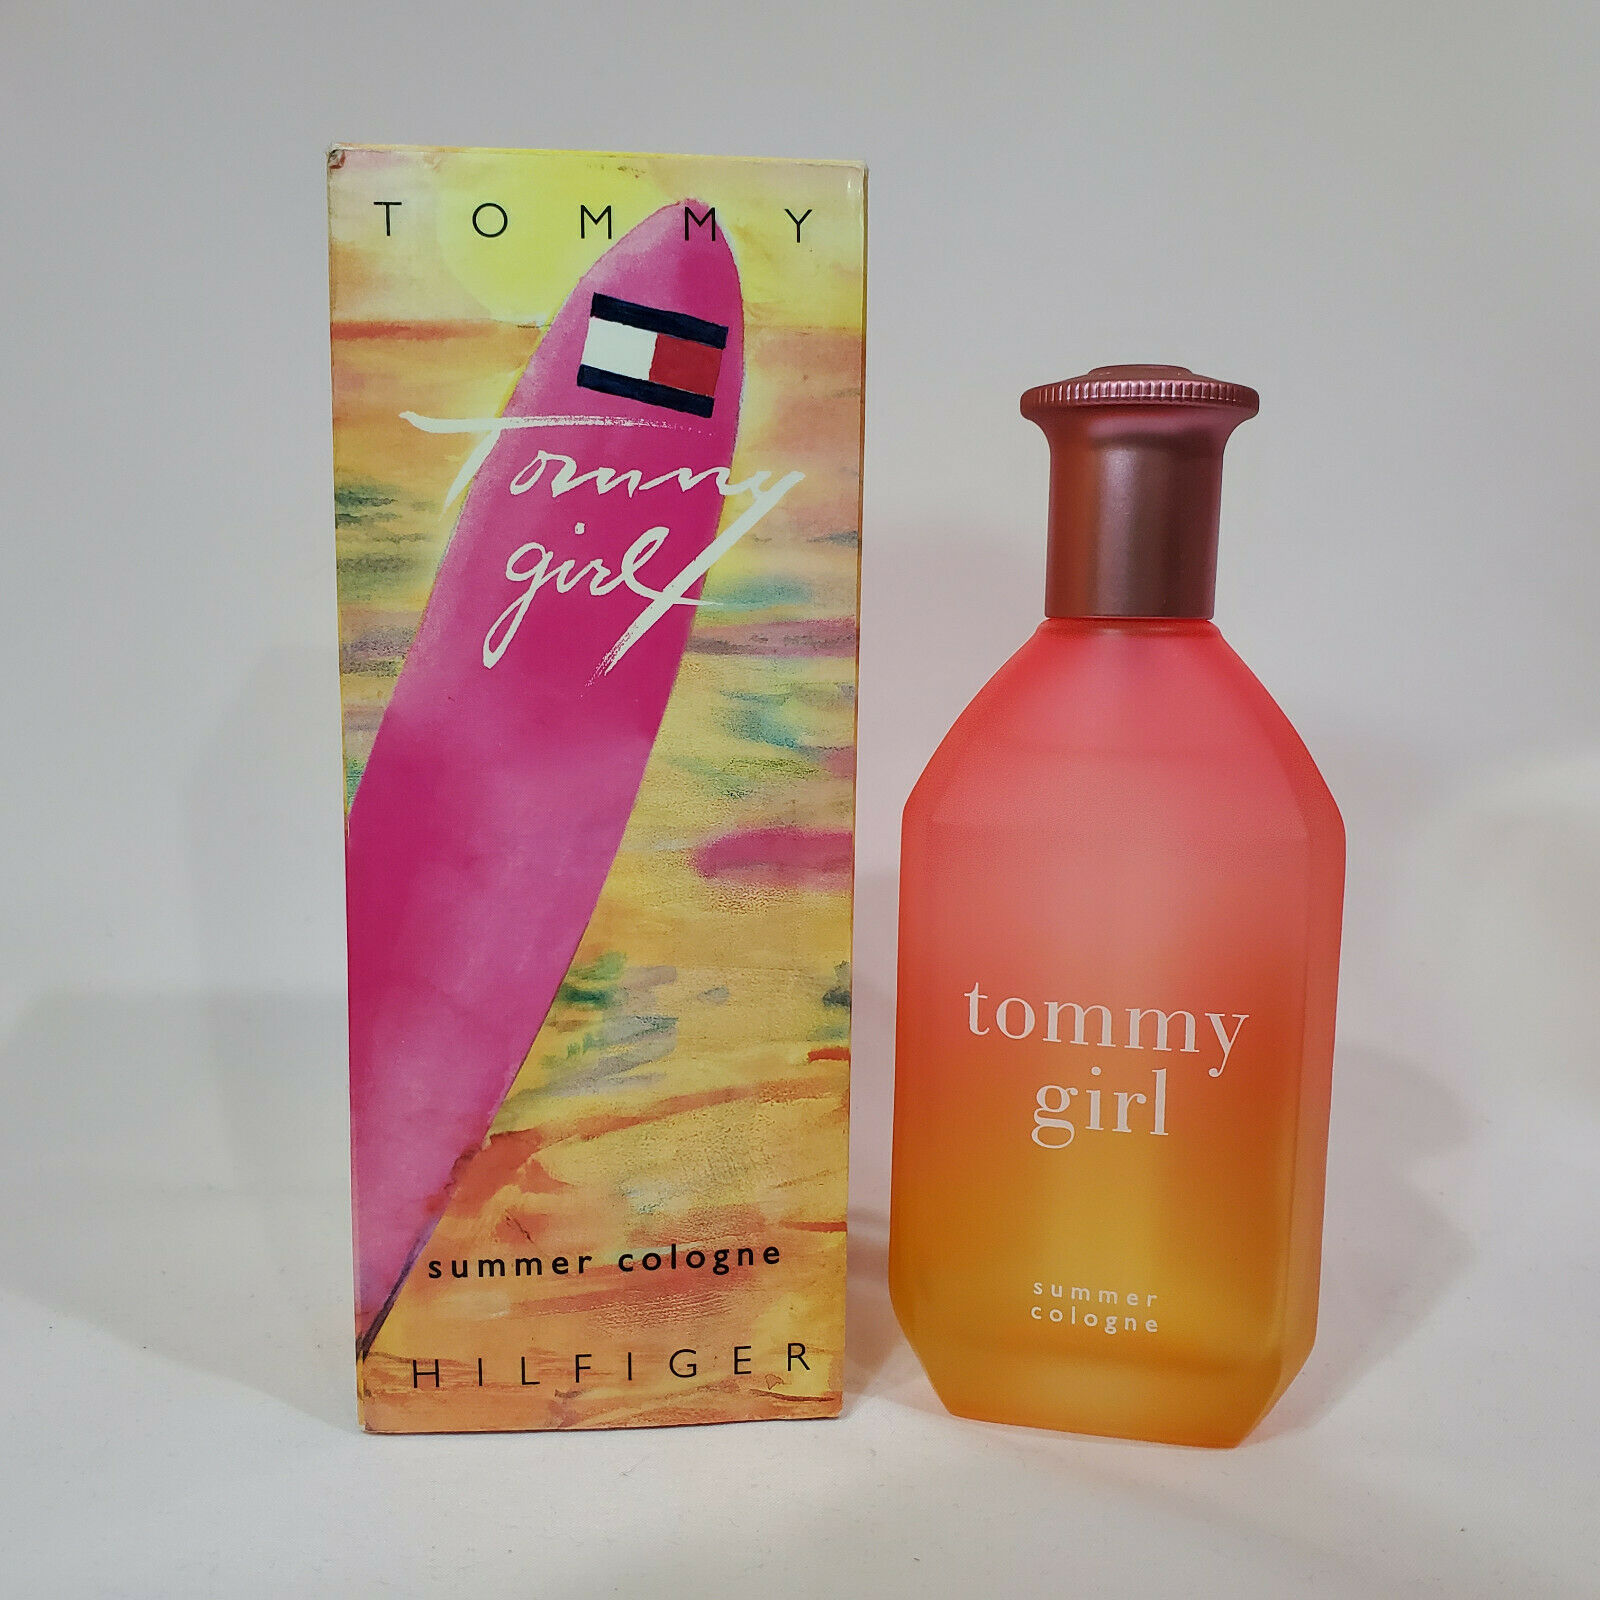 Aaaaaatommy hilfiger tommy girl summer perfume 3.4 oz 2005